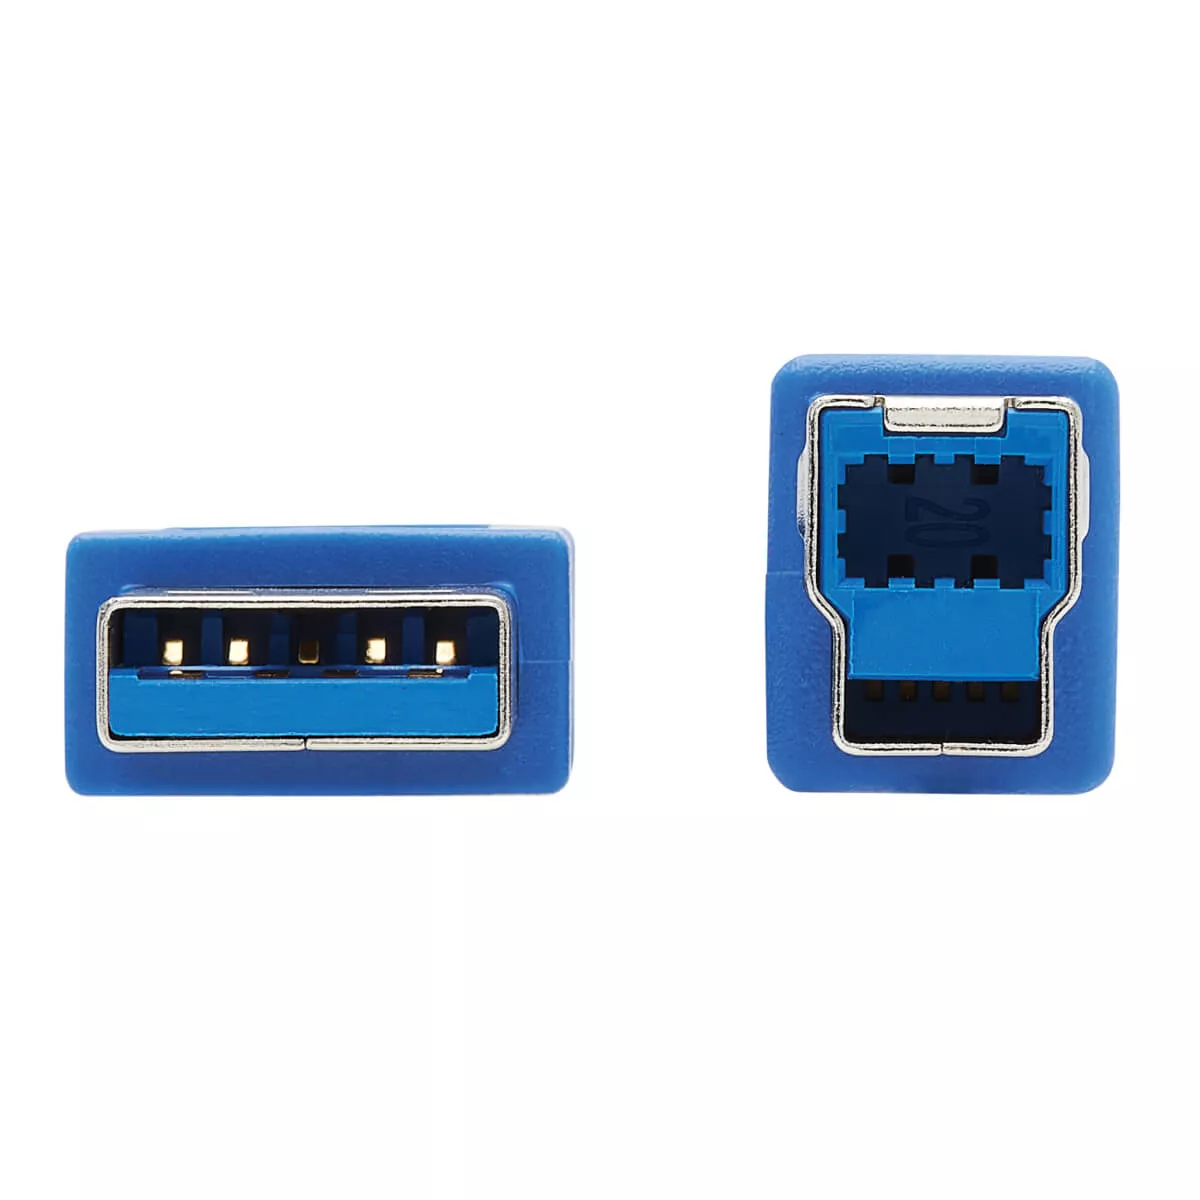 Vente EATON TRIPPLITE HDMI KVM Cable Kit for Tripp Tripp Lite au meilleur prix - visuel 6